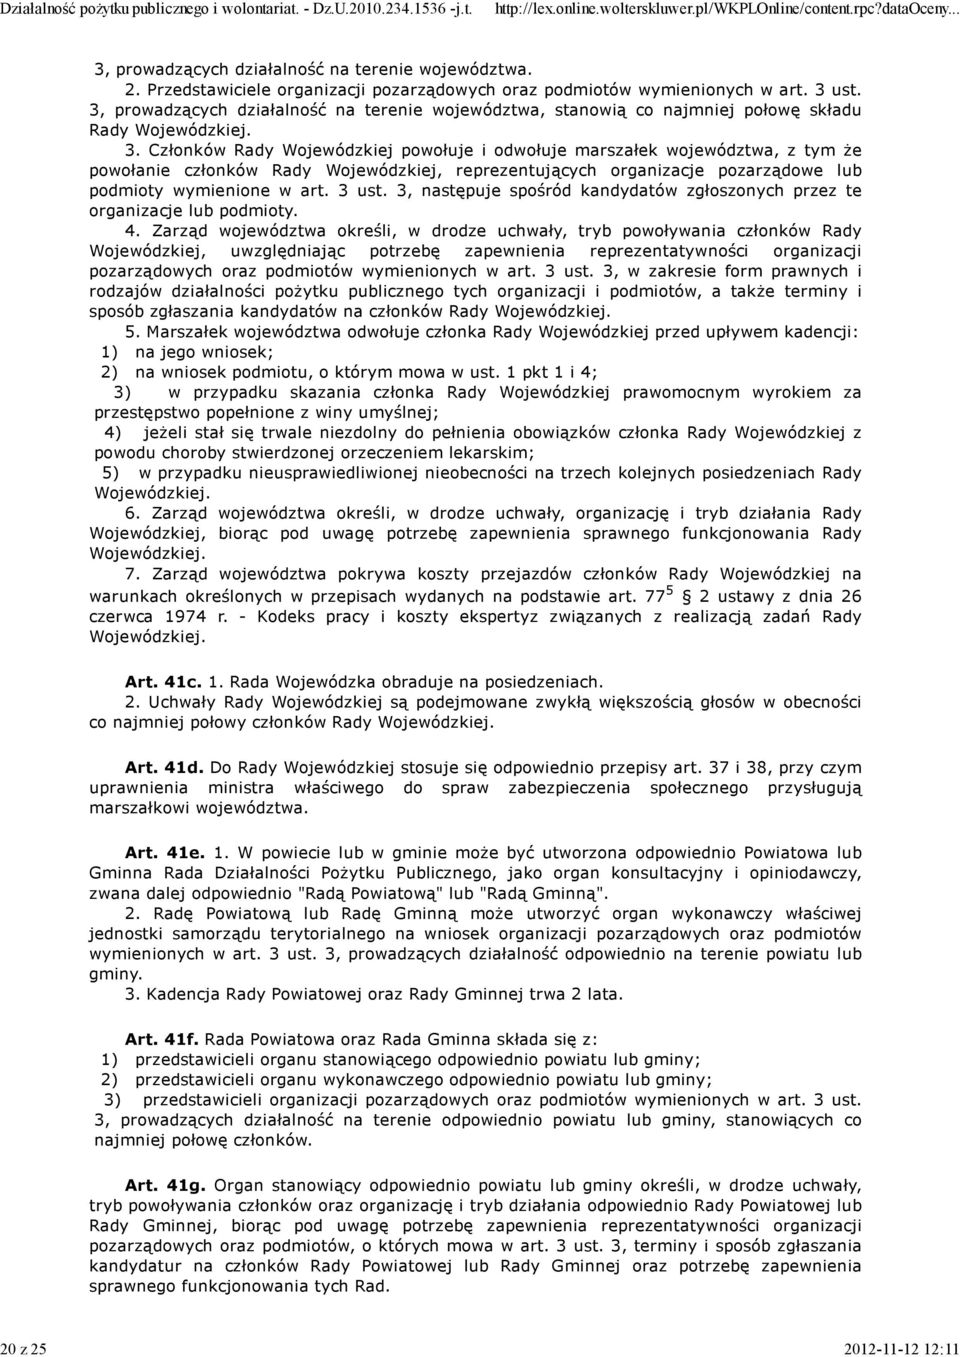 Członków Rady Wojewódzkiej powołuje i odwołuje marszałek województwa, z tym że powołanie członków Rady Wojewódzkiej, reprezentujących organizacje pozarządowe lub podmioty wymienione w art. 3 ust.